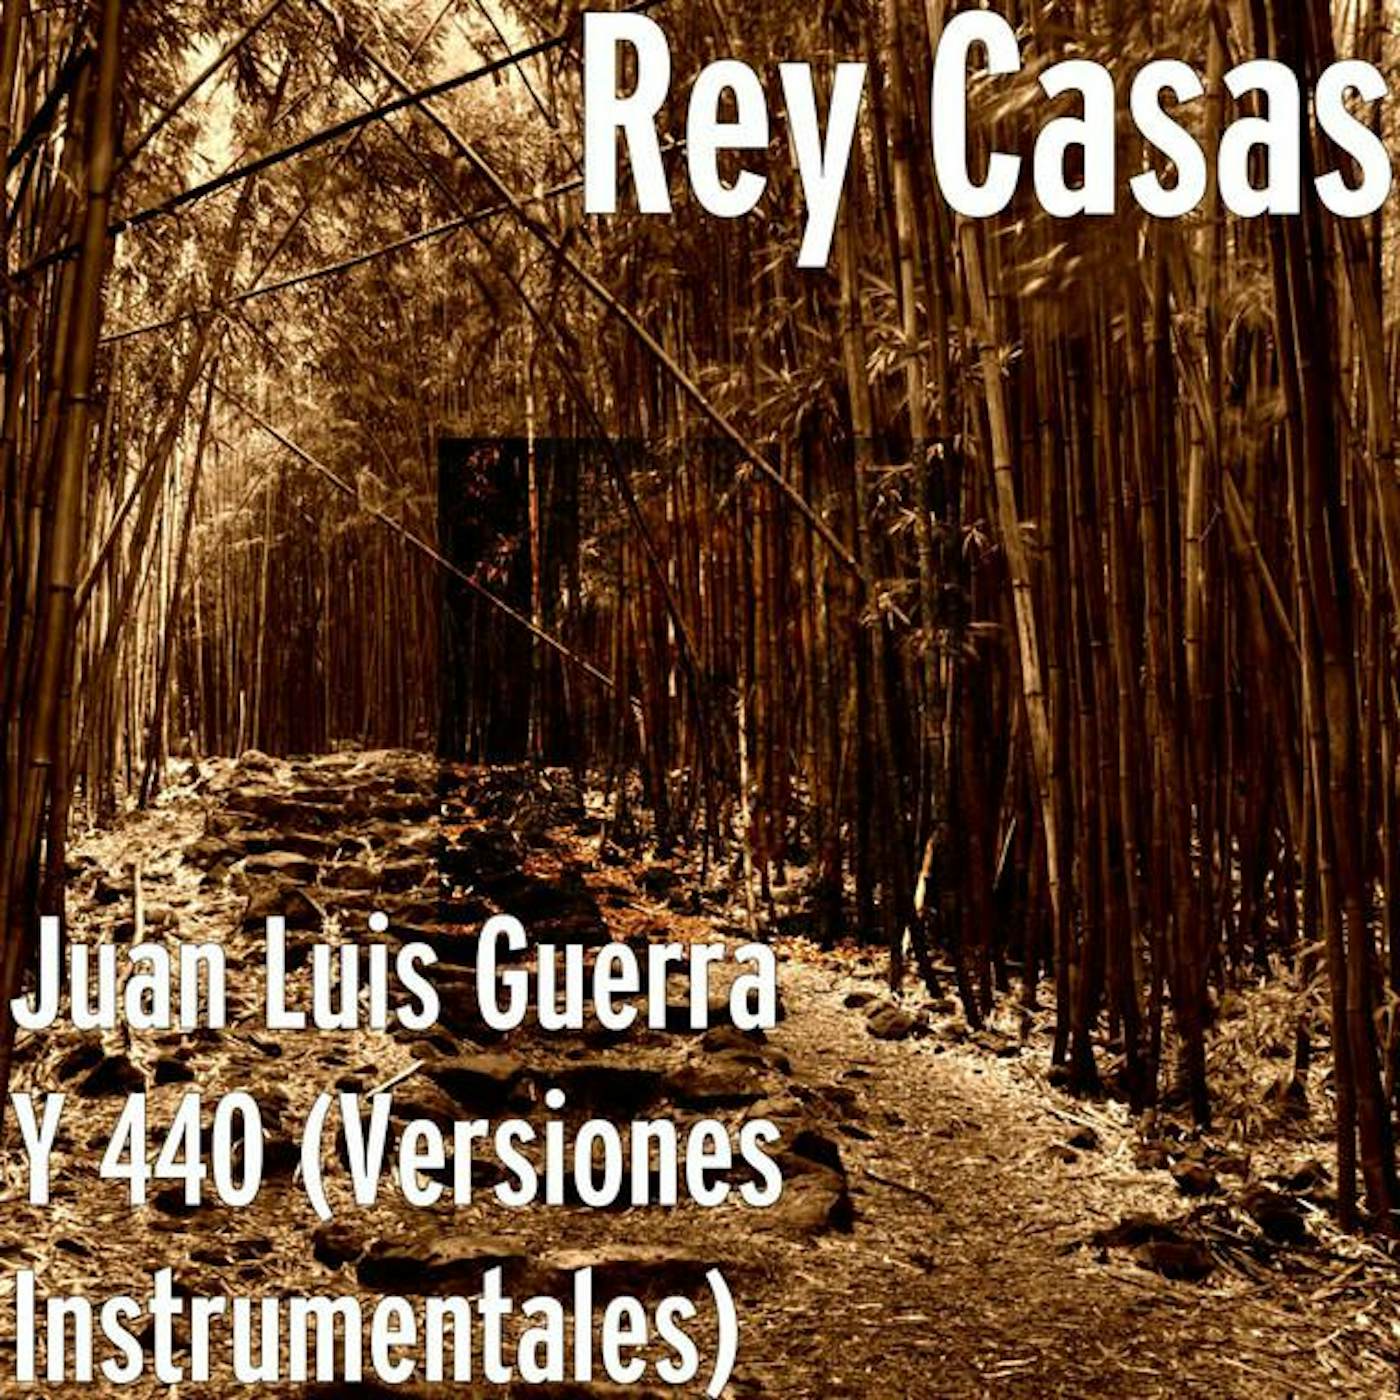 Rey Casas